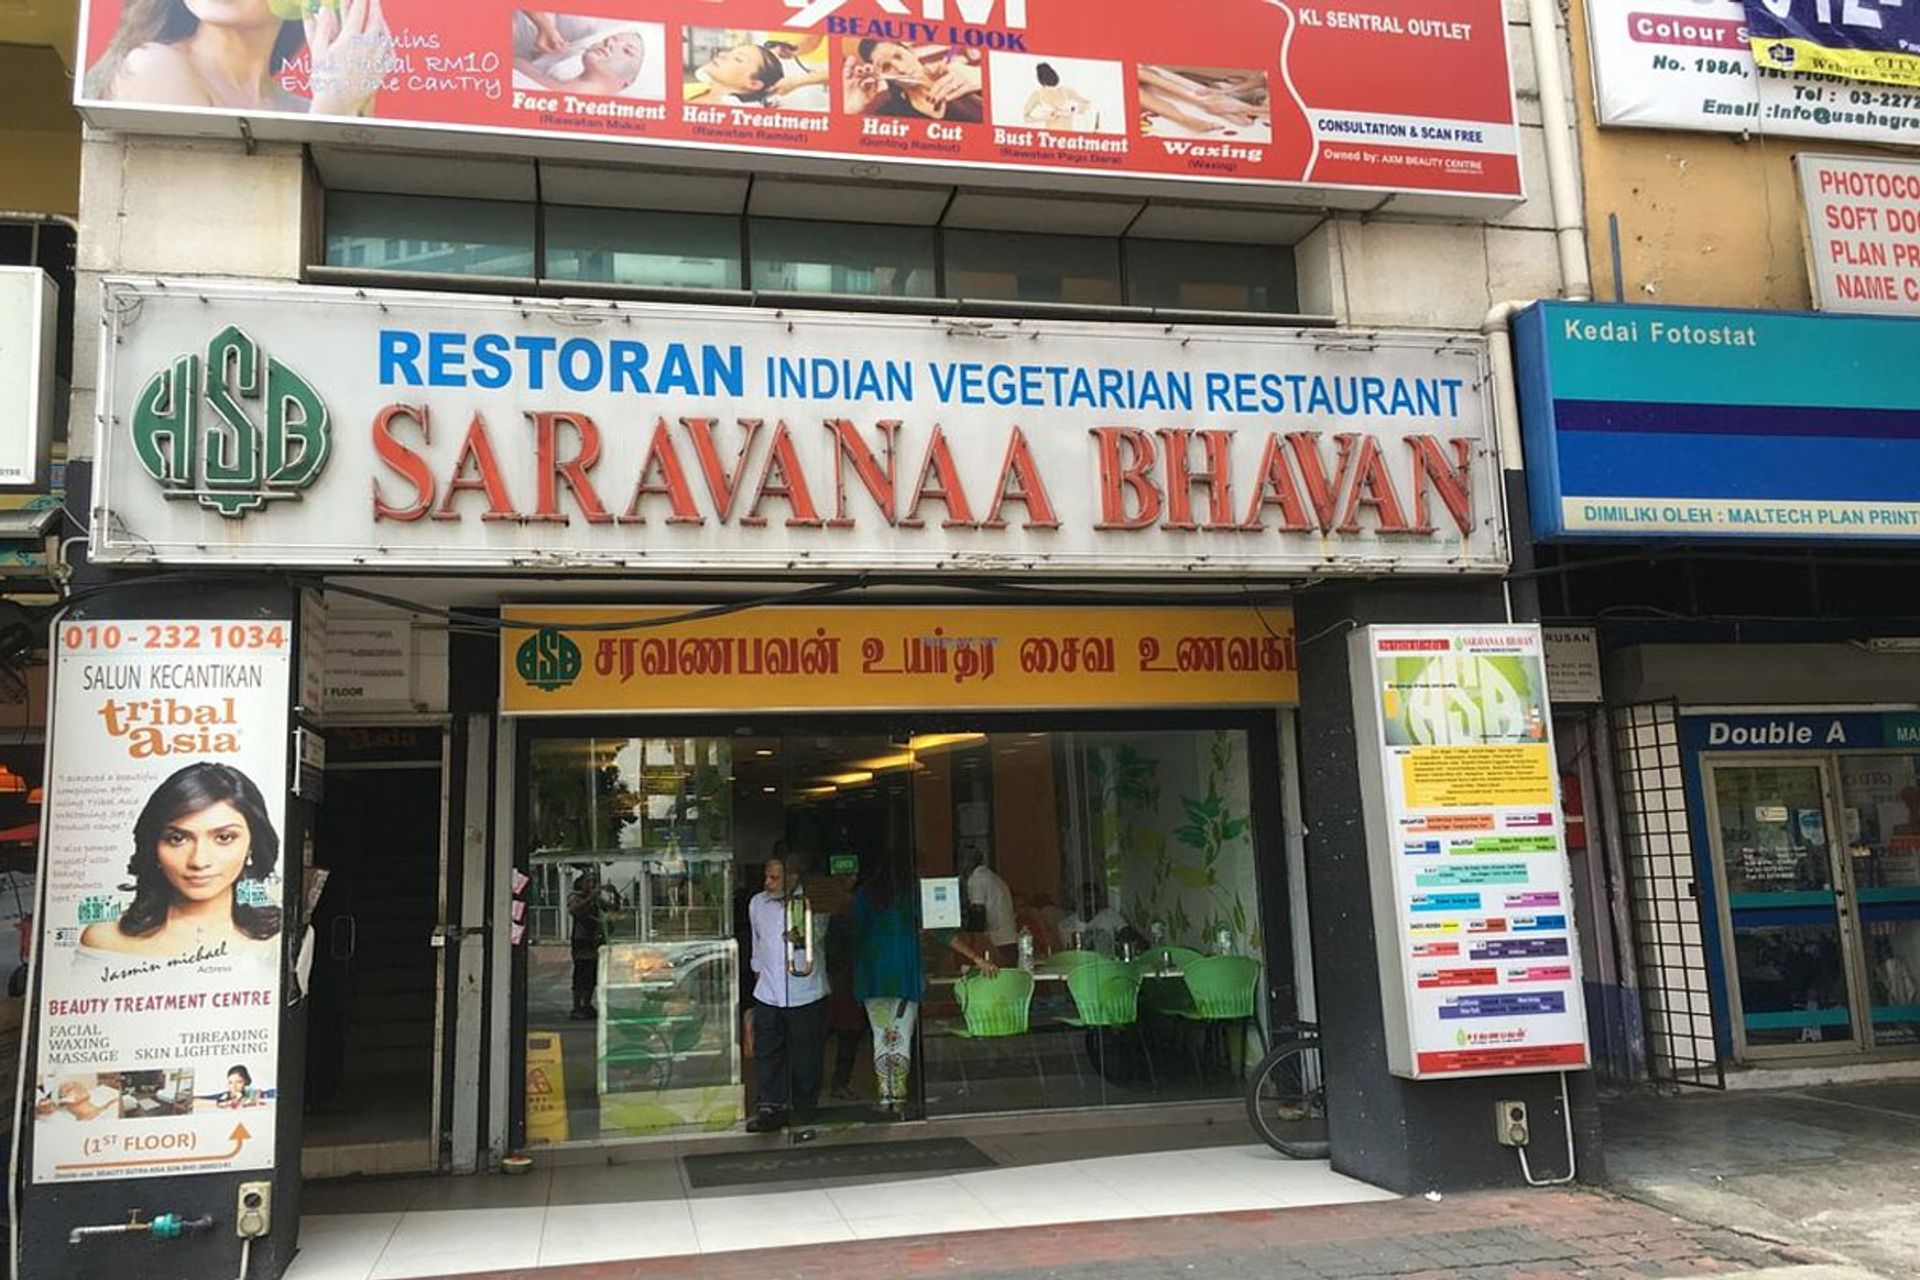  Saravana Bhavan